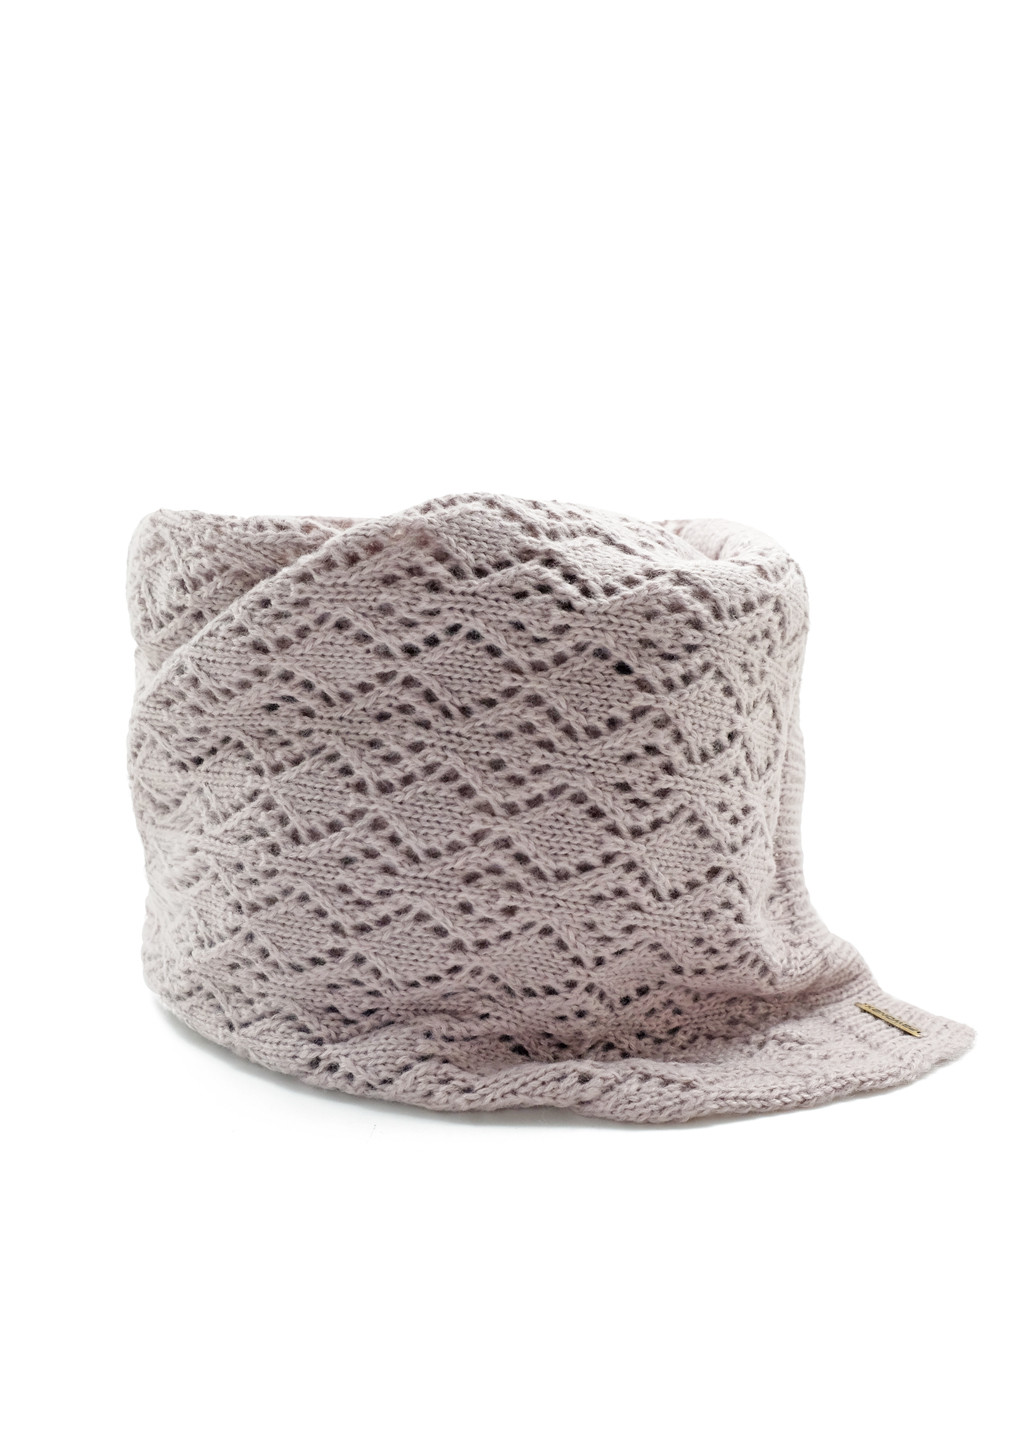 Бежевый демисезонный комплект (шапка, шарф) Pawonex